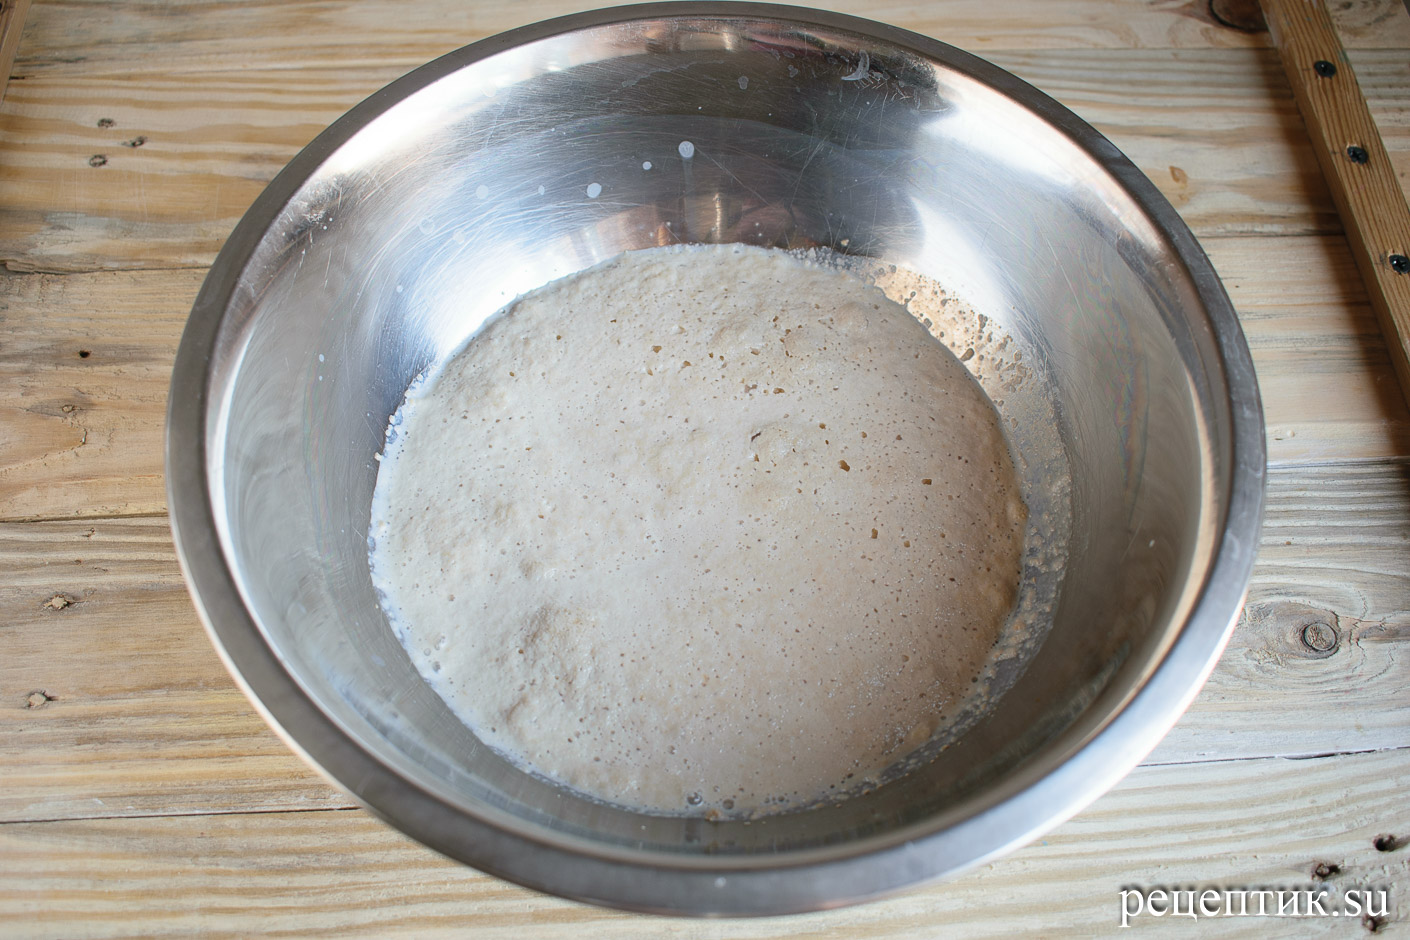 Дрожжевые пирожки со сливами в духовке - рецепт с фото, шаг 1